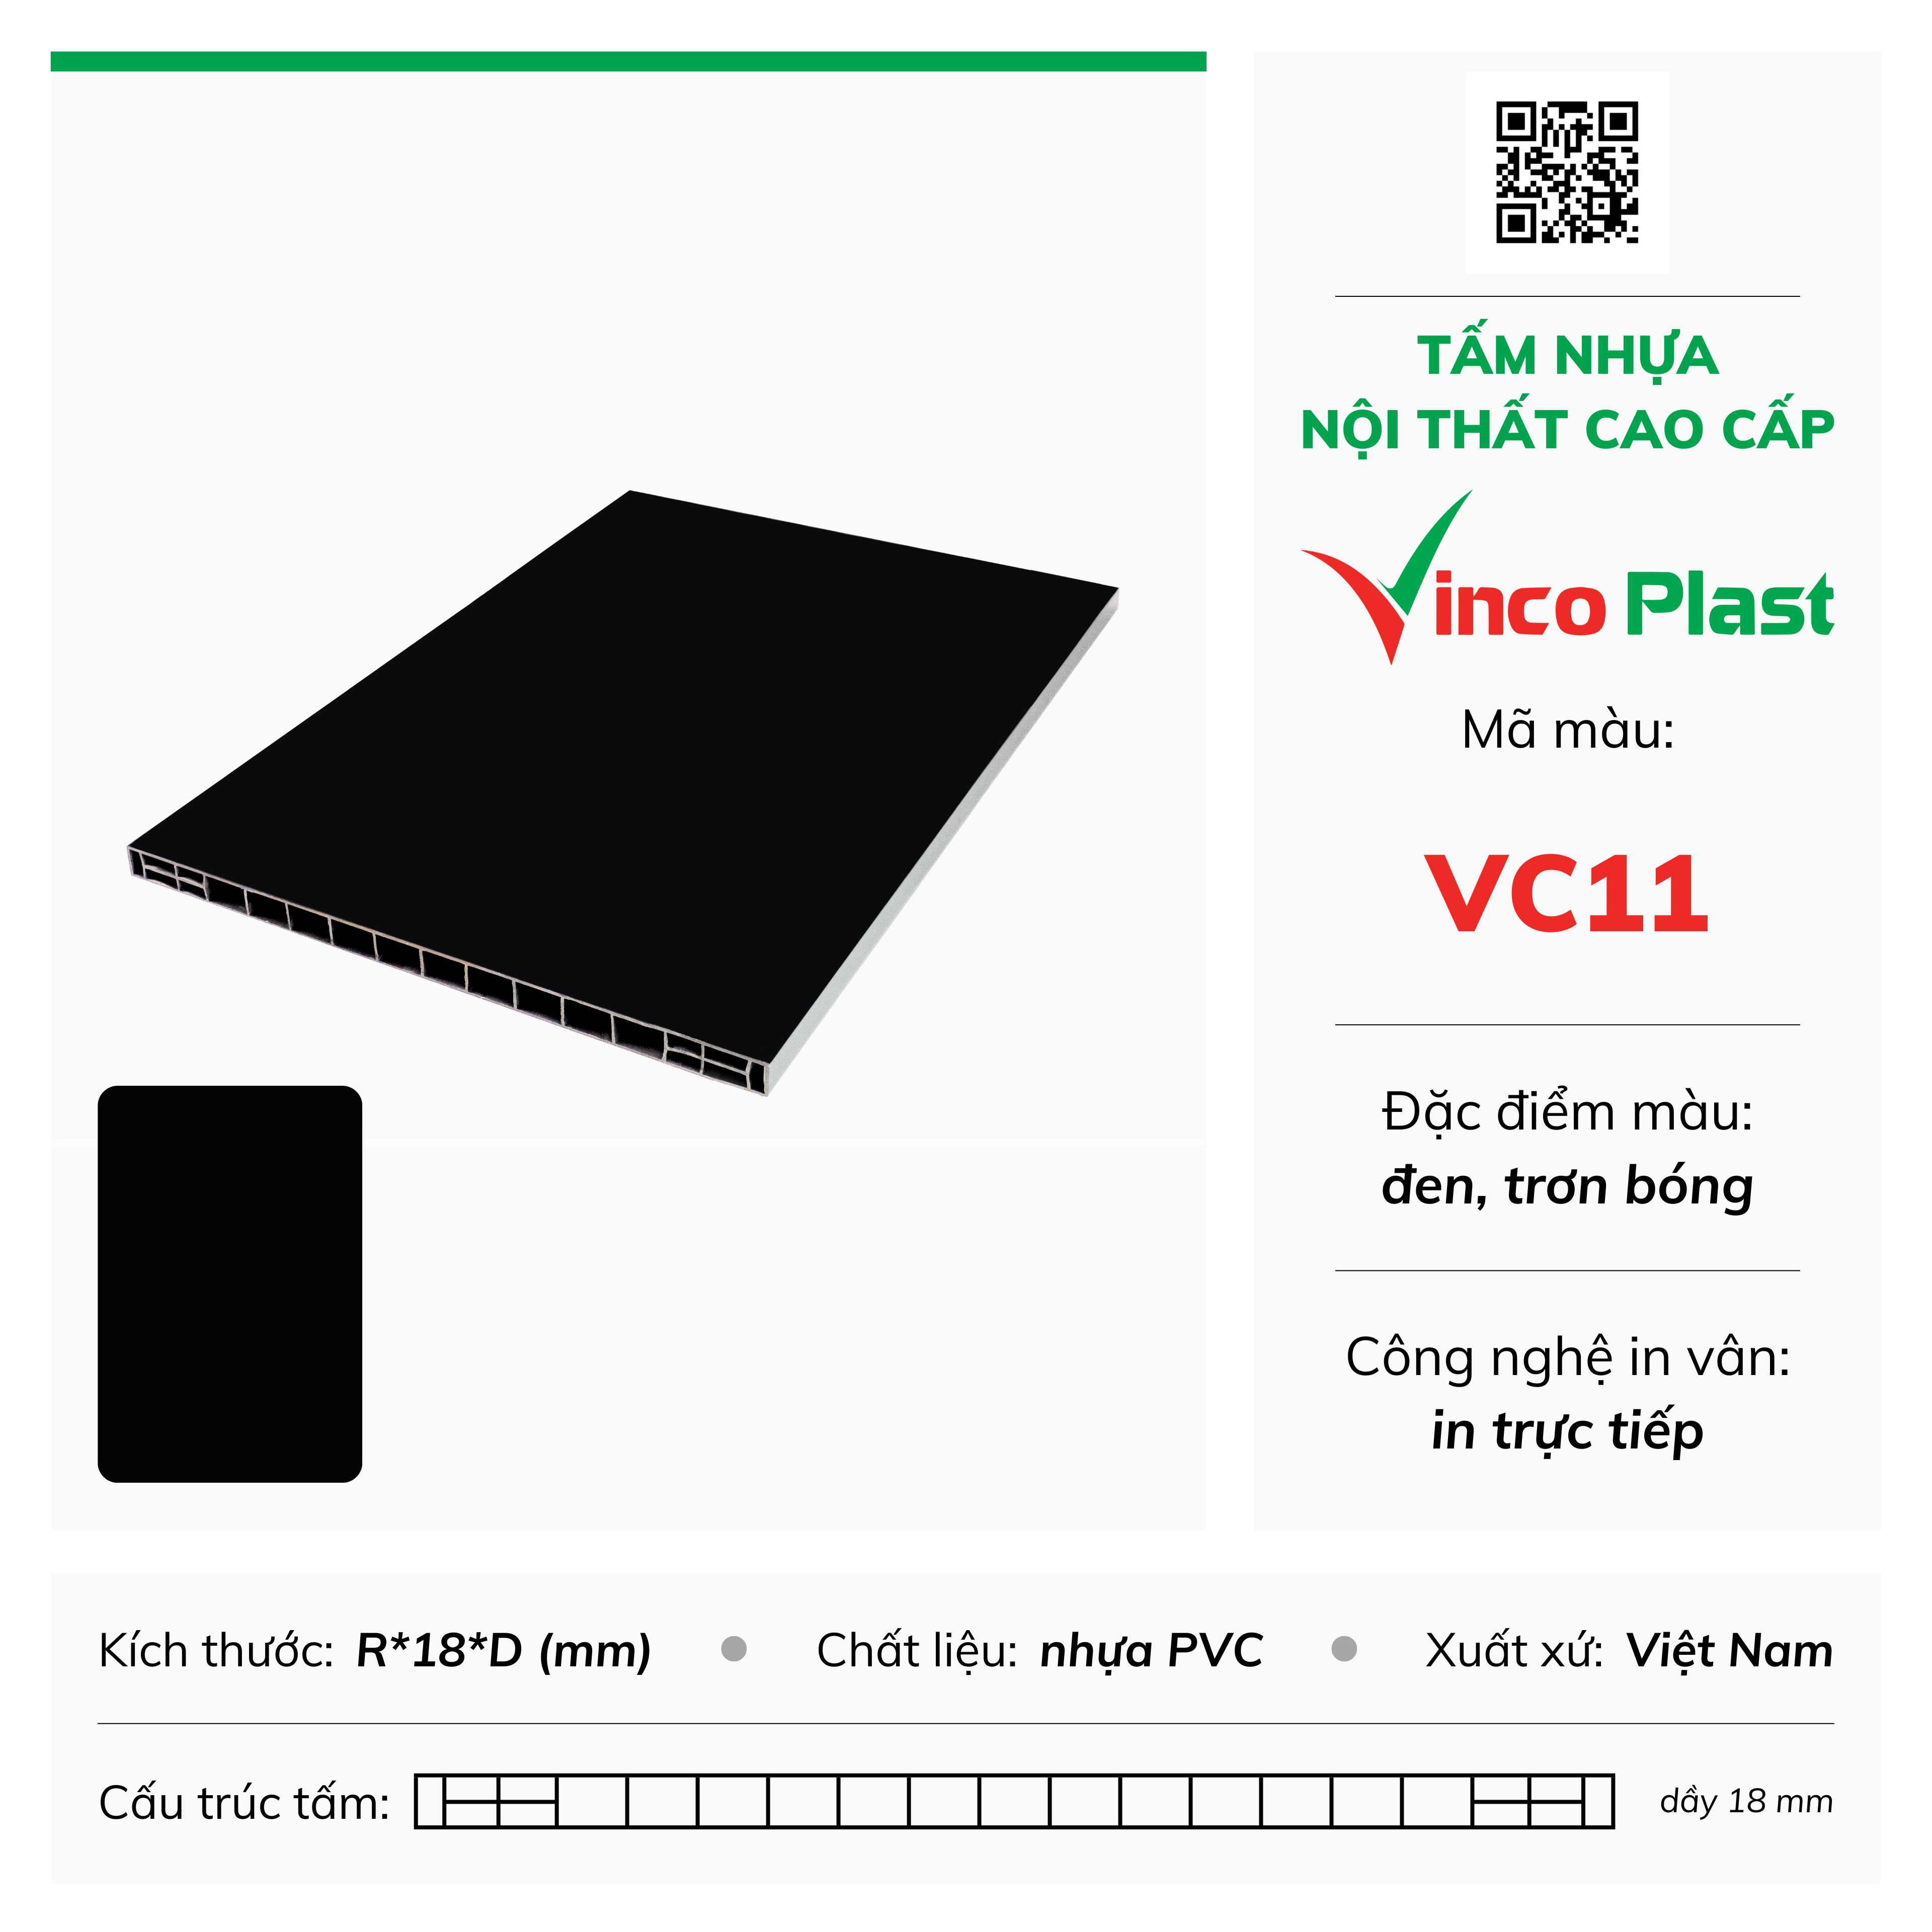 Tấm nhựa nội thất cao cấp Vincoplast màu vc11